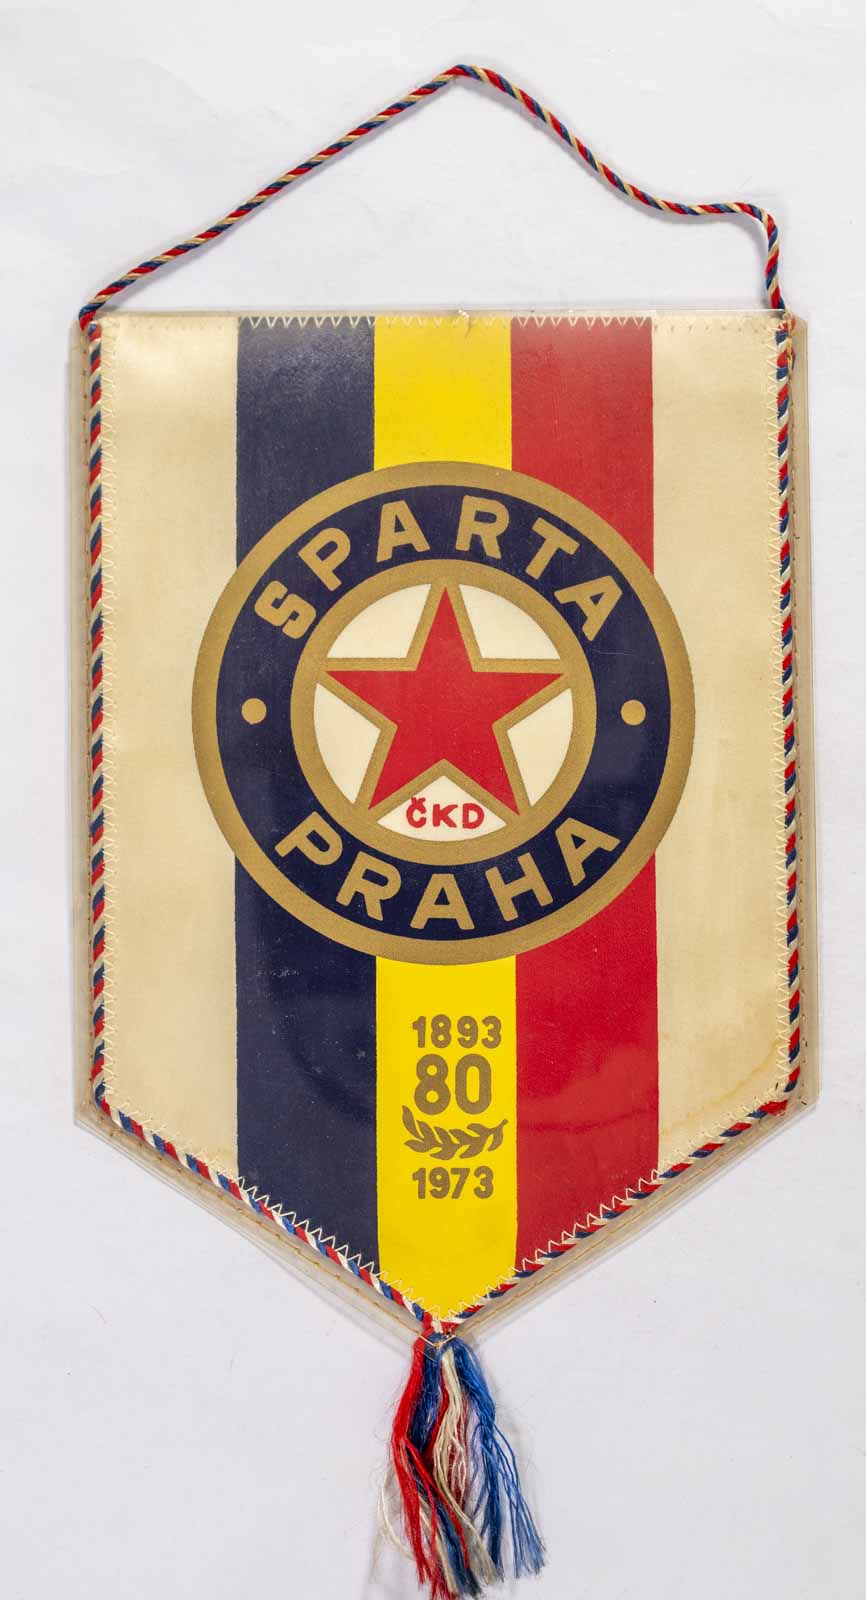 Klubová vlajka Sparta Praha, 1893 - 1973, 80 let